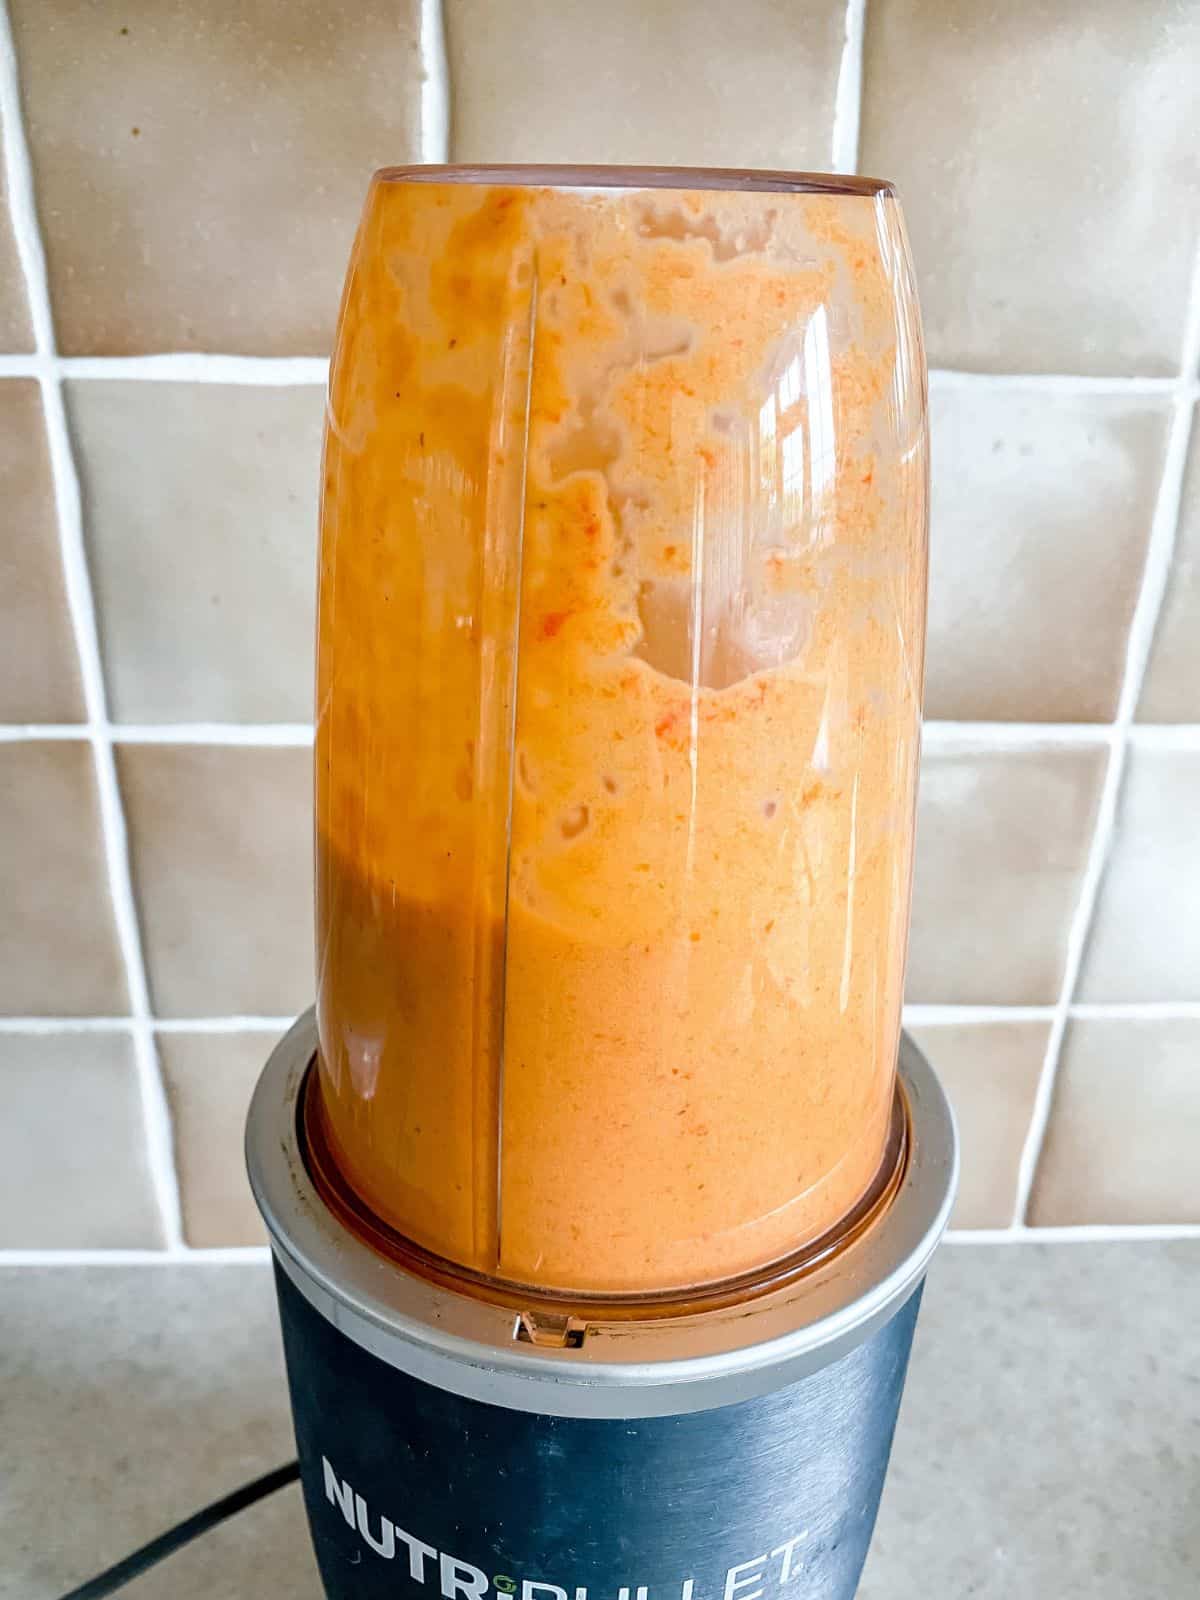 red pepper sauce in a Nutribullet blender.